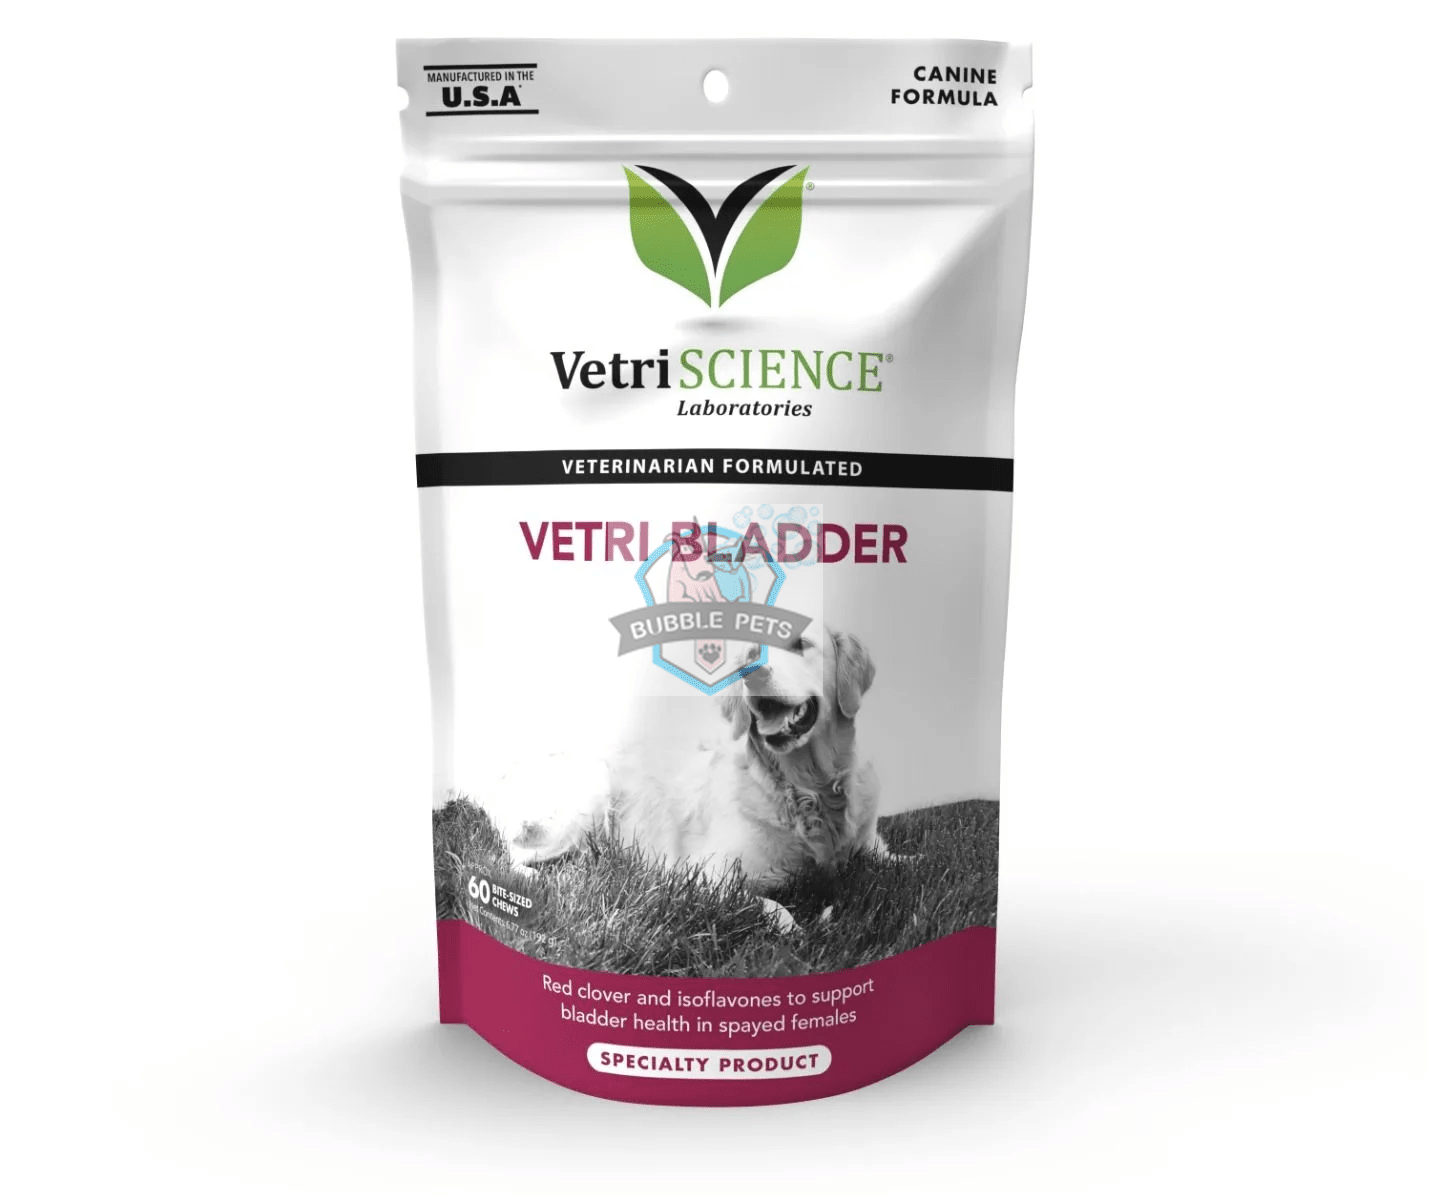 VetriScience® - Vetri Bladder Supplement for Dogs (60 chews)